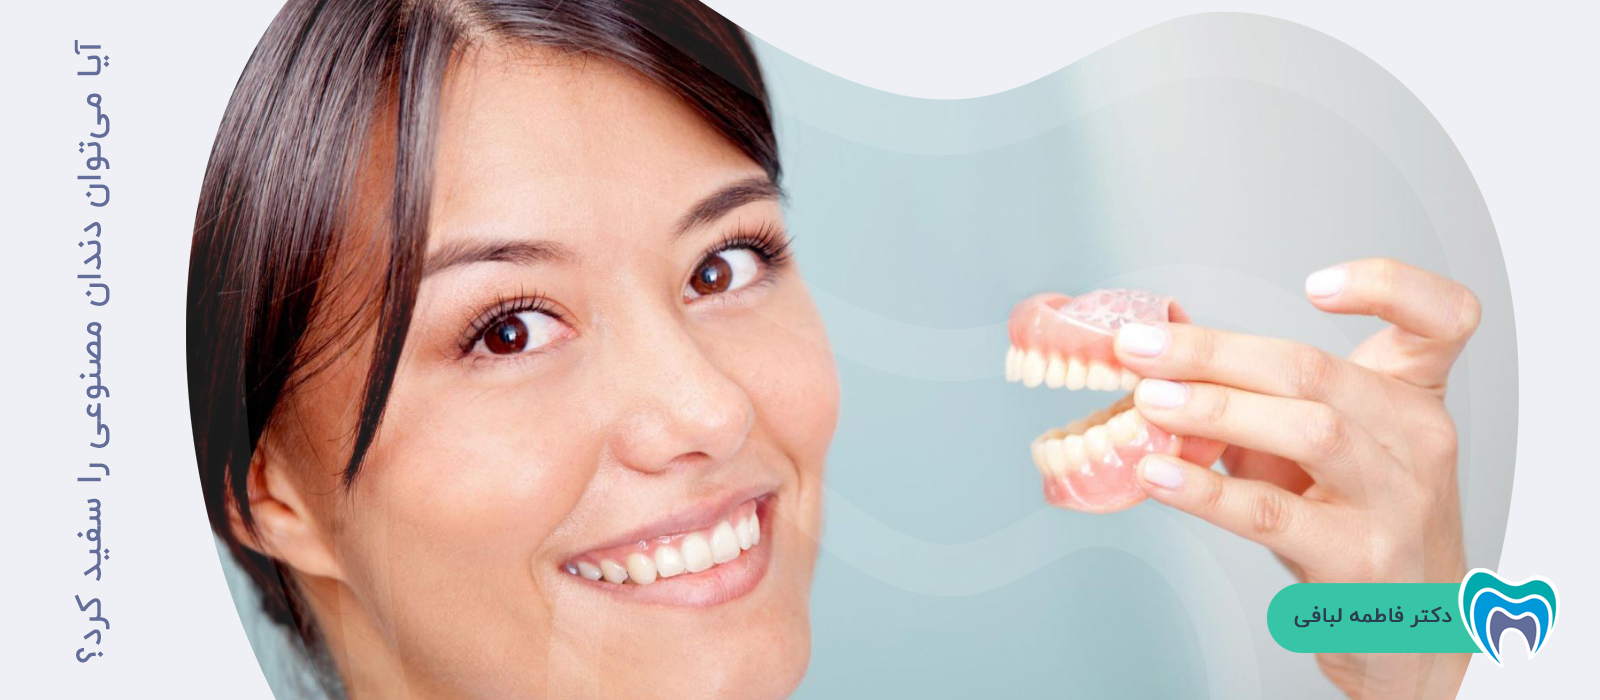 آیا امکان تمیز و سفید کردن دندان مصنوعی وجود دارد؟